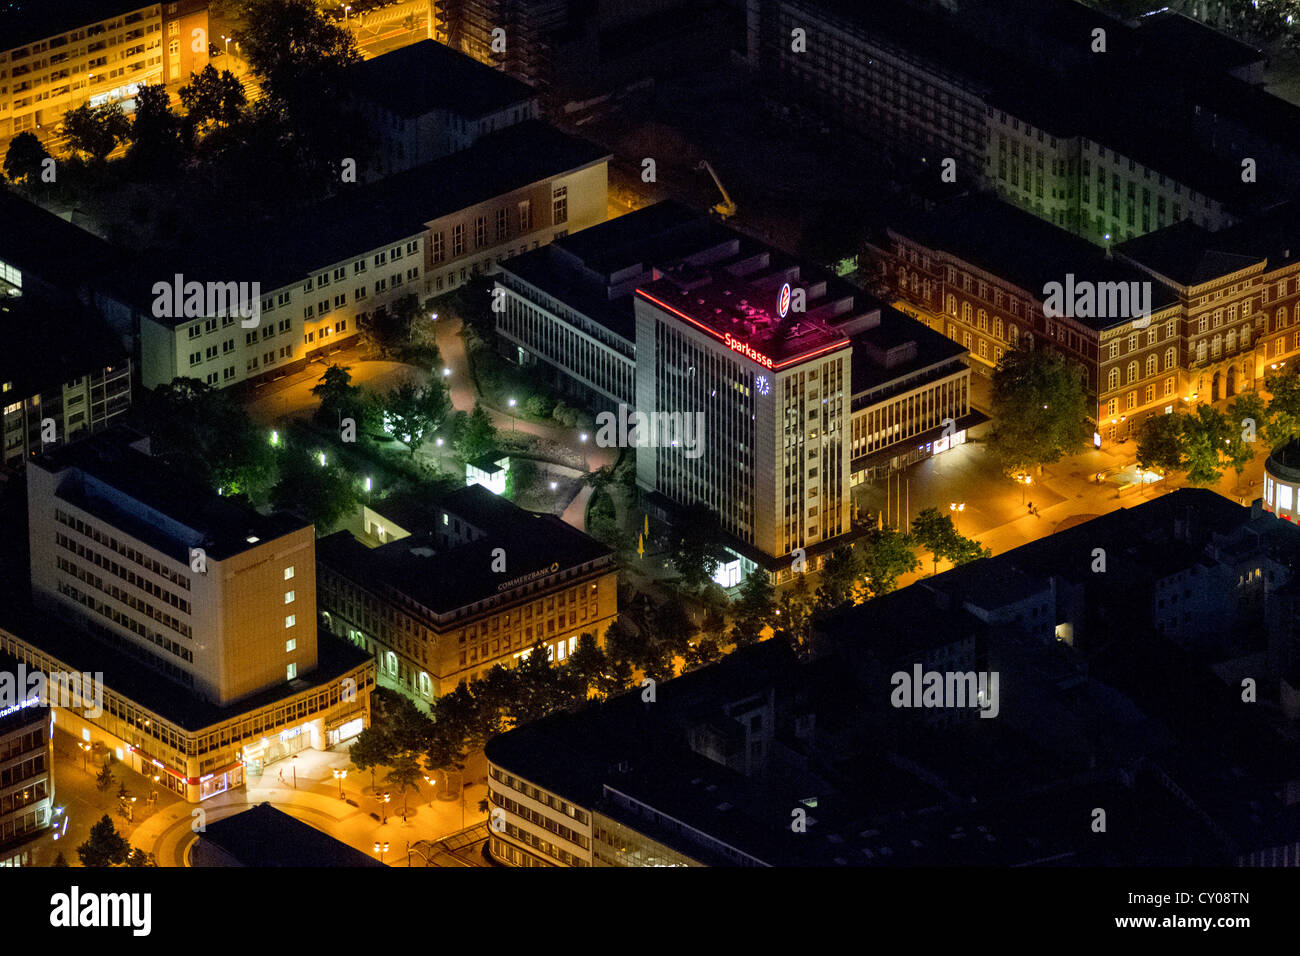 Vista aerea, Koenigsallee street, centro città, ramo della Sparkasse, banca di risparmio, Duisburg, Extraschicht 2012 Foto Stock